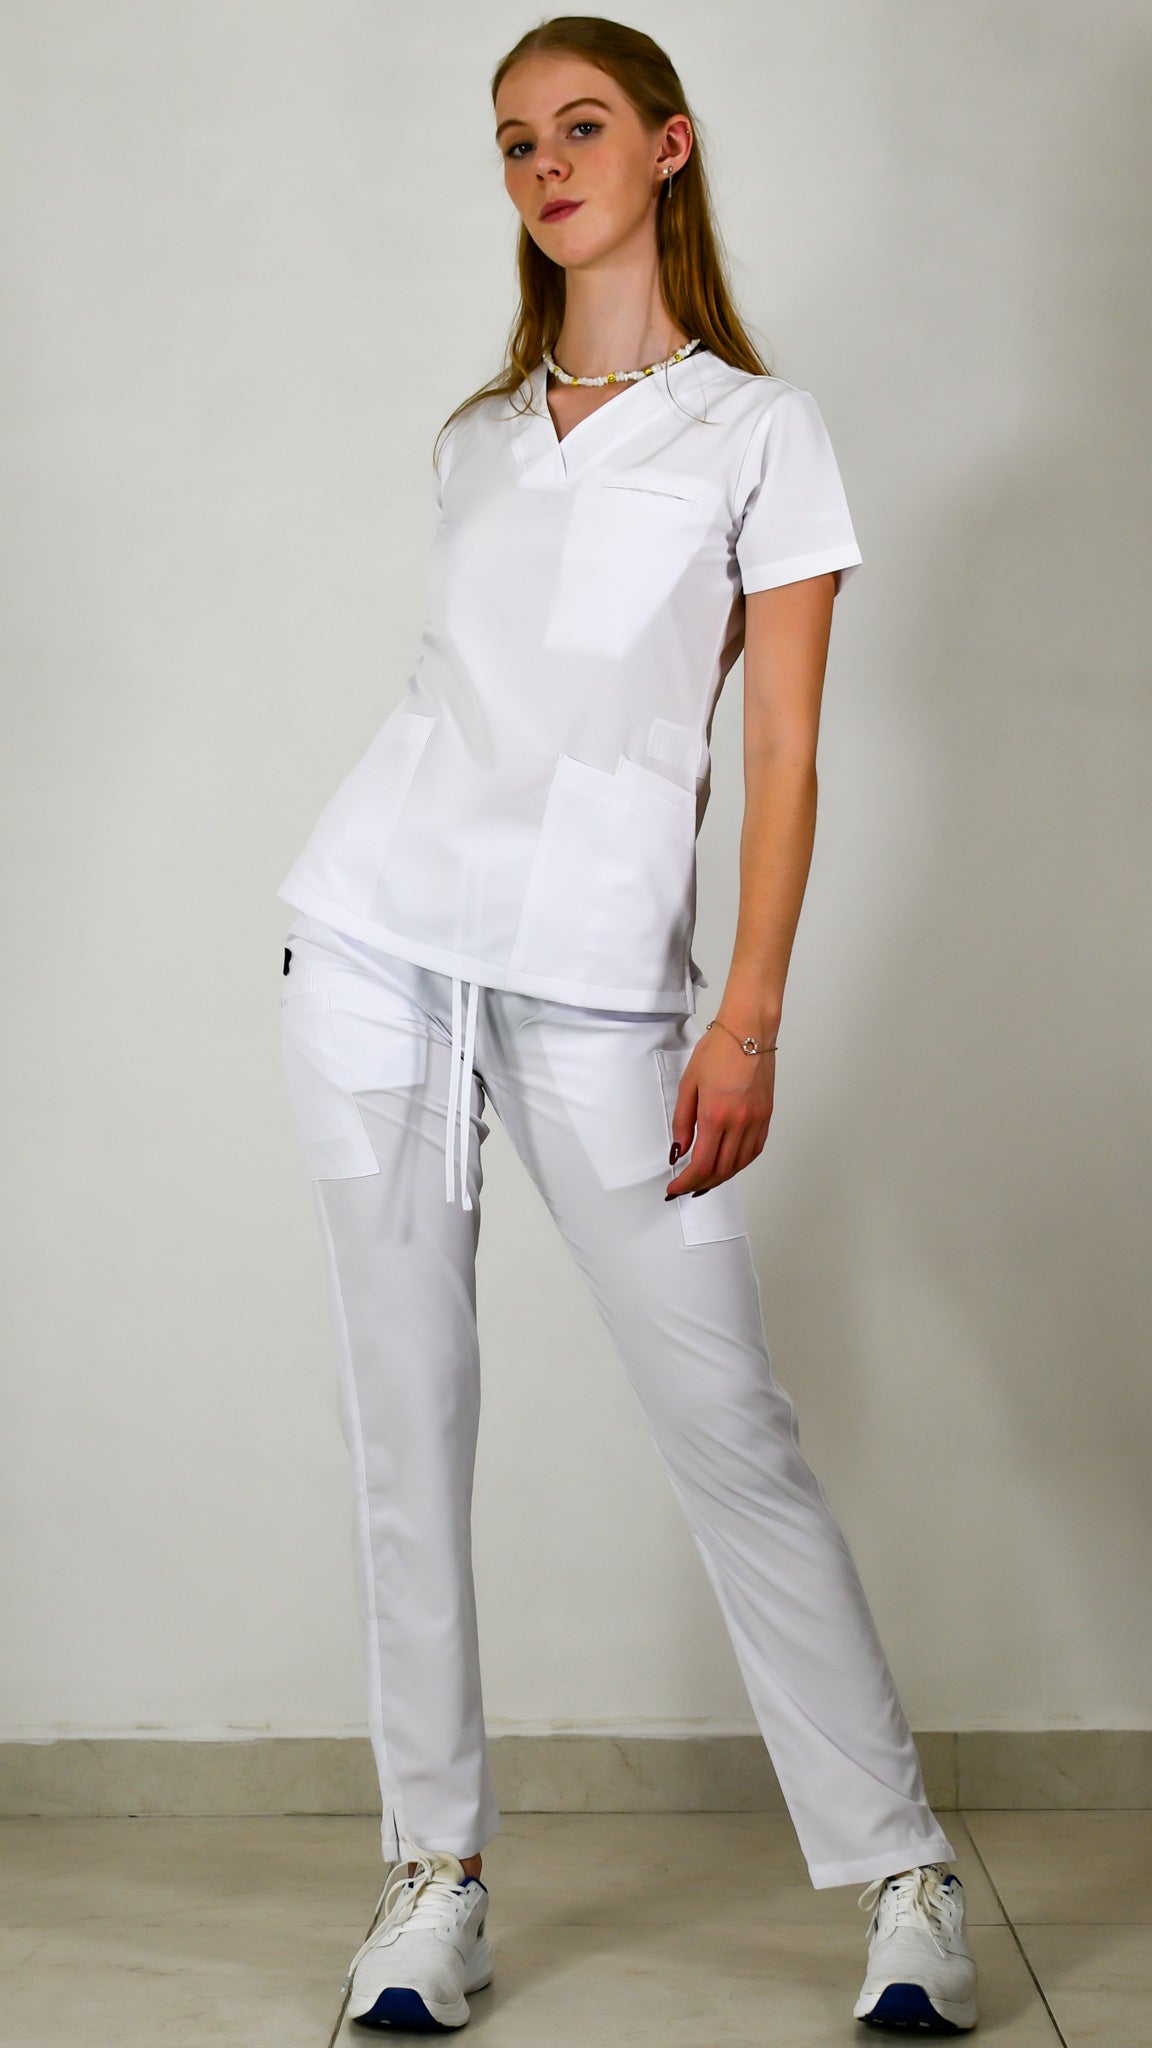 uniformes blancos de enfermera